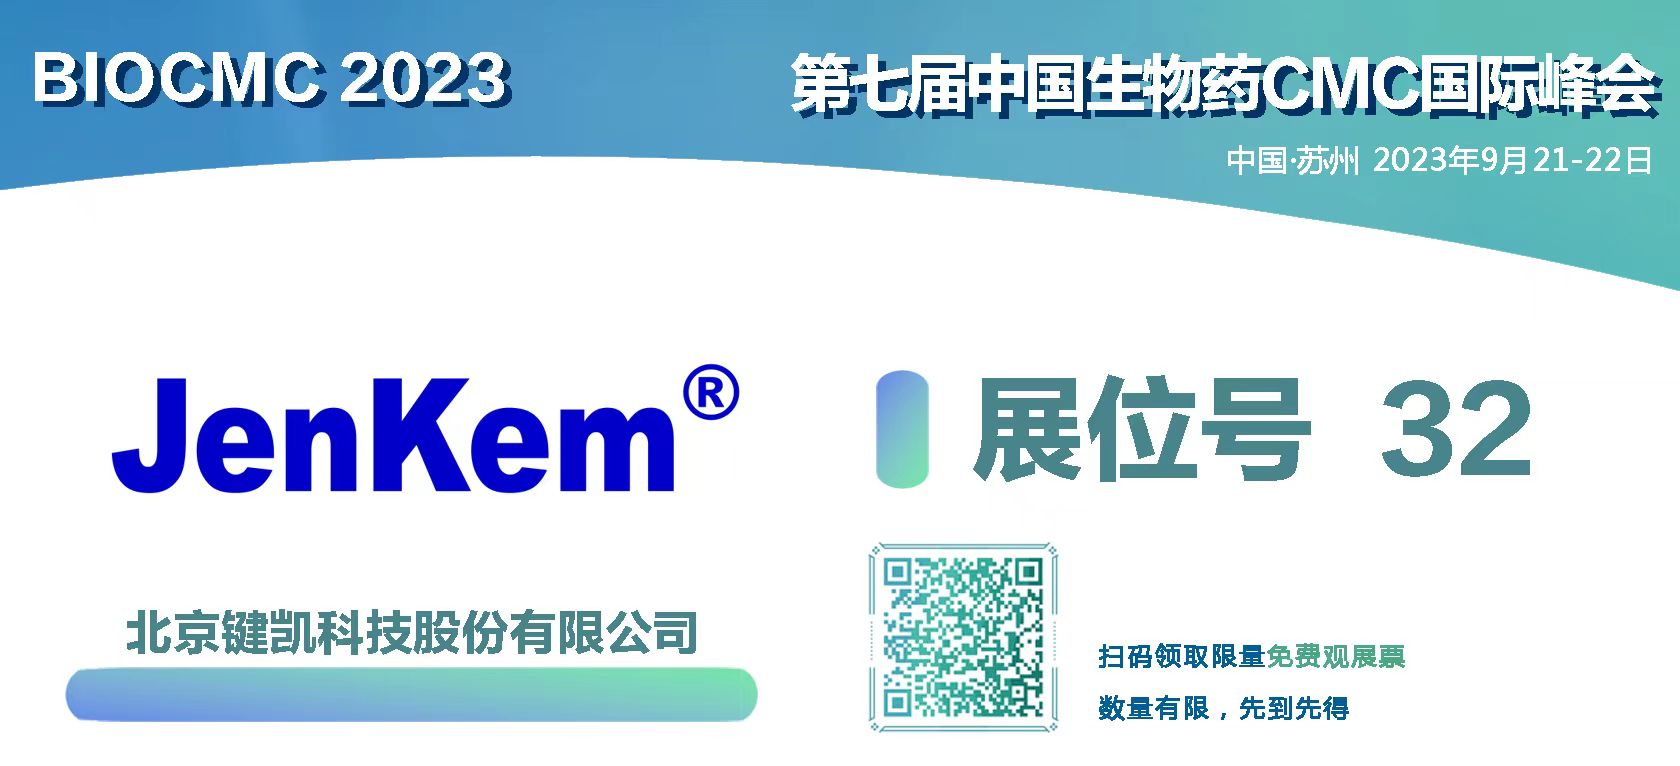 键凯科技邀您莅临BioCMC 2023 | 第七届中国生物药CMC国际峰会